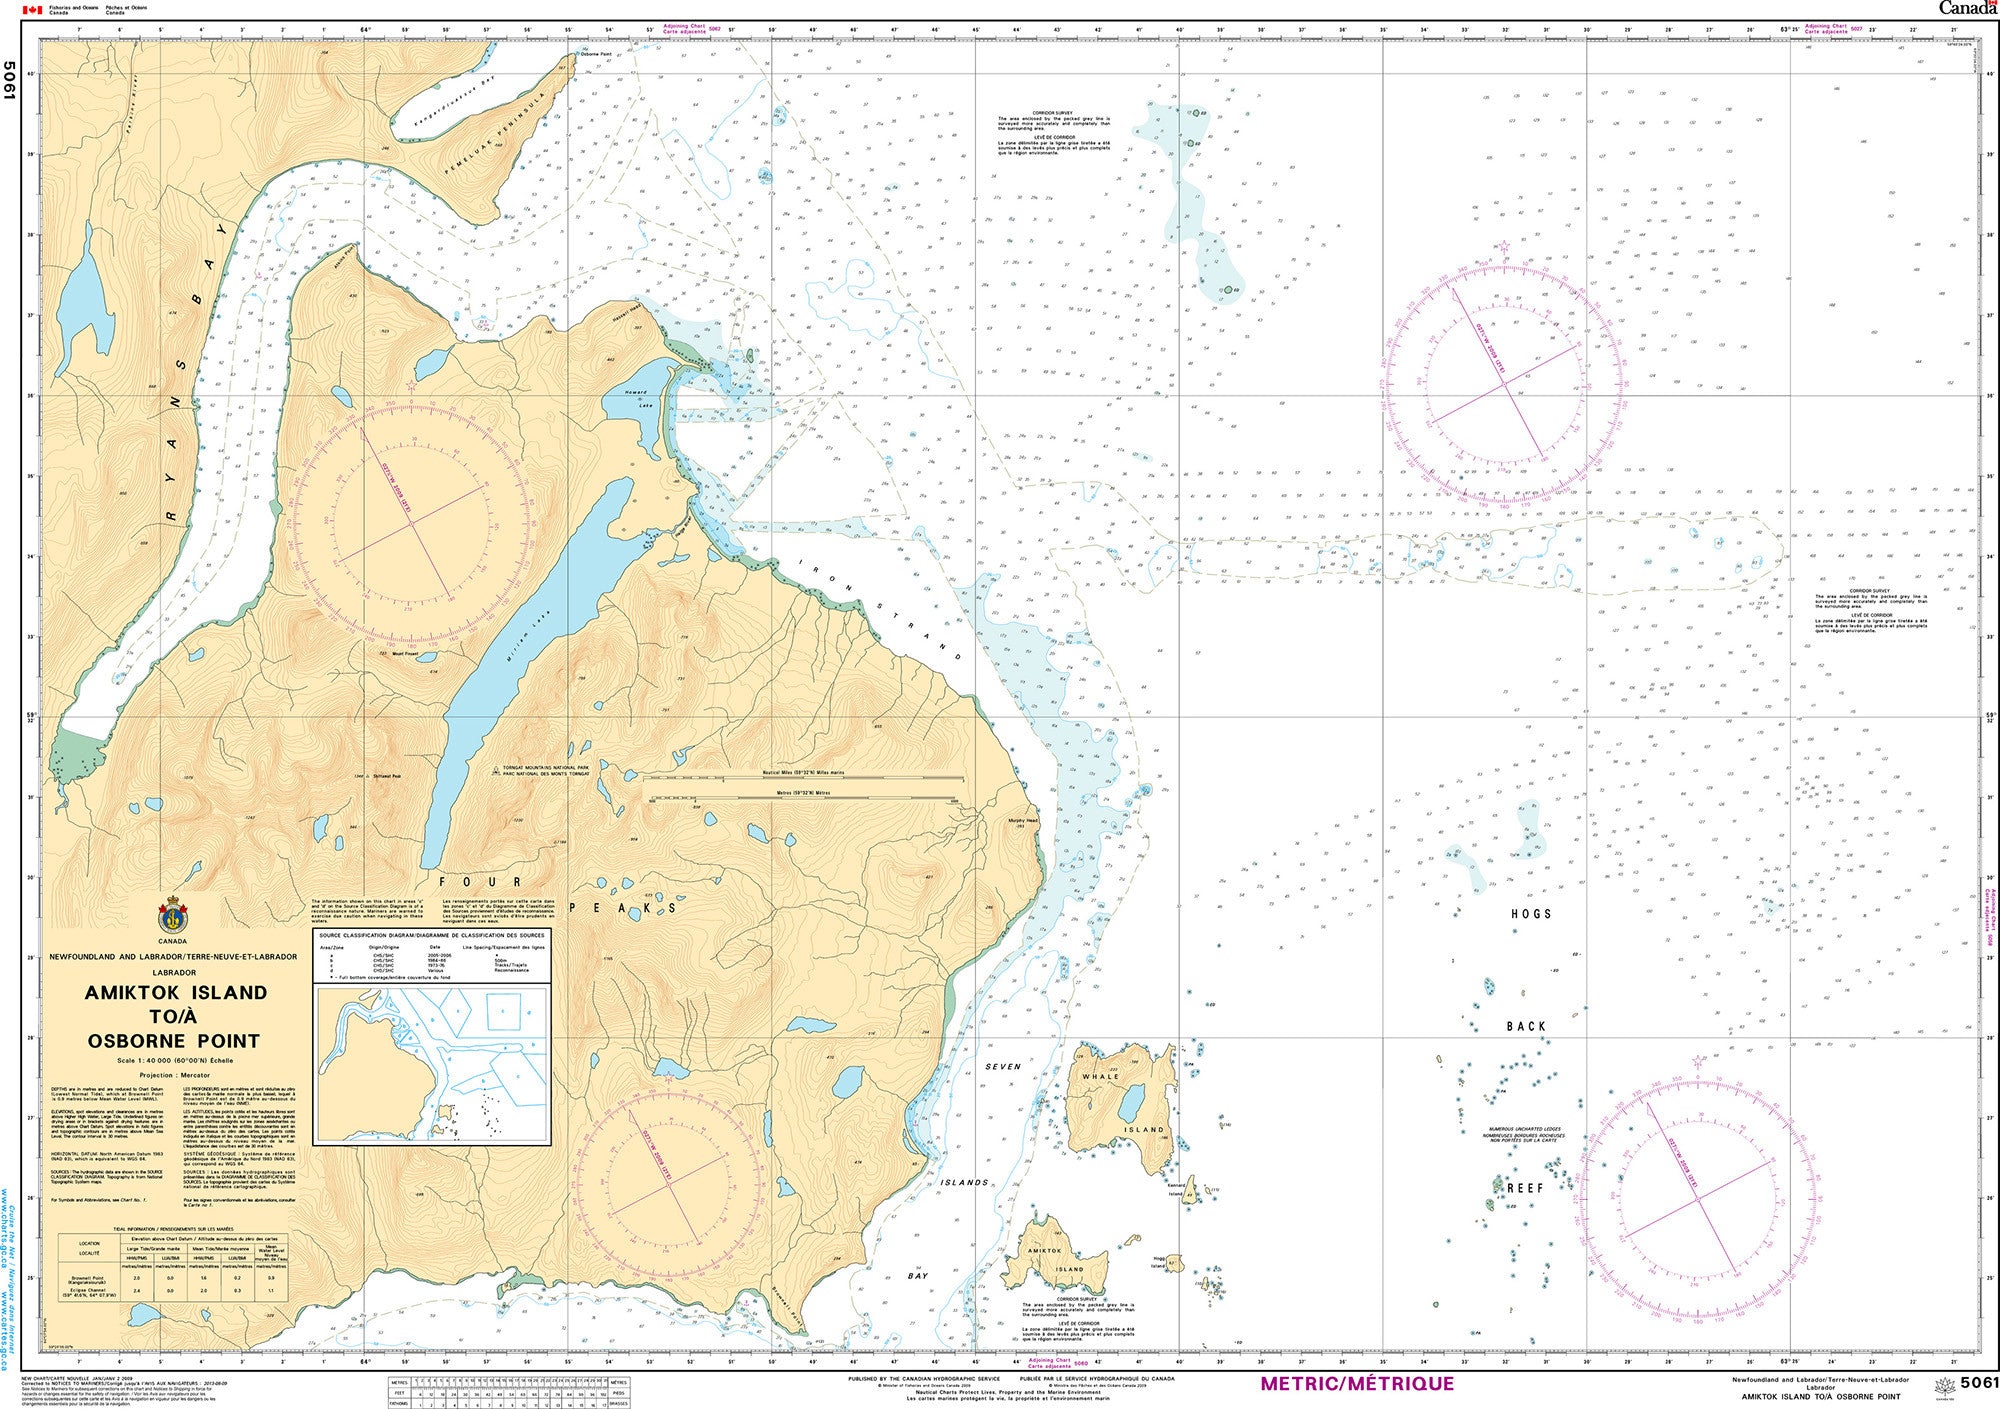 Canadian Hydrographic Service Nautical Chart CHS5061: Amiktok Island to/à Osborne Point